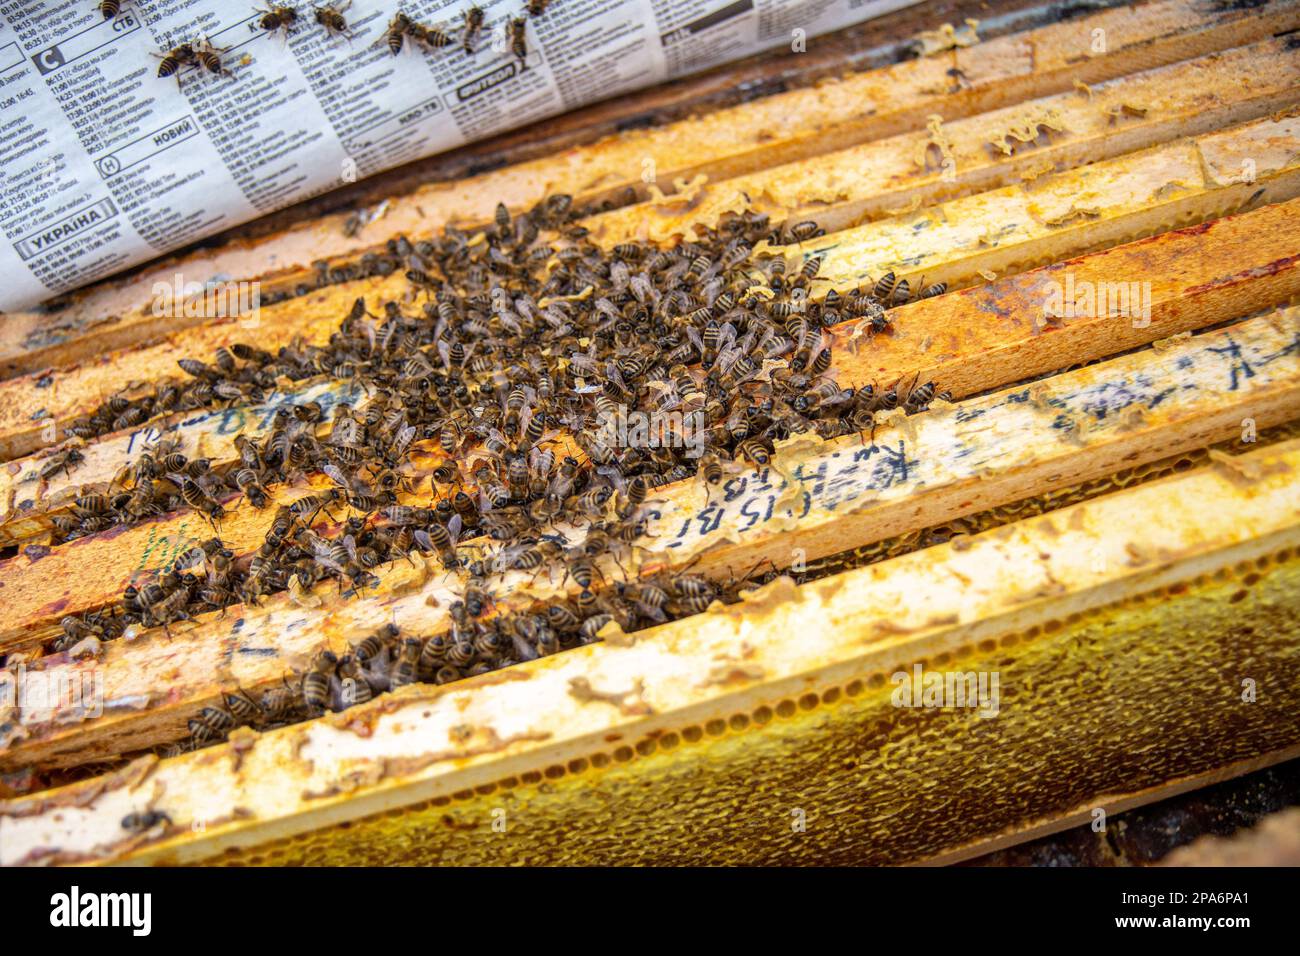 l'apiculteur pousse le cadre du burin. L'homme supervise la production de miel dans l'abeille. Cadres en bois visibles. Les cadres sont recouverts d'essaim d'abeilles Banque D'Images